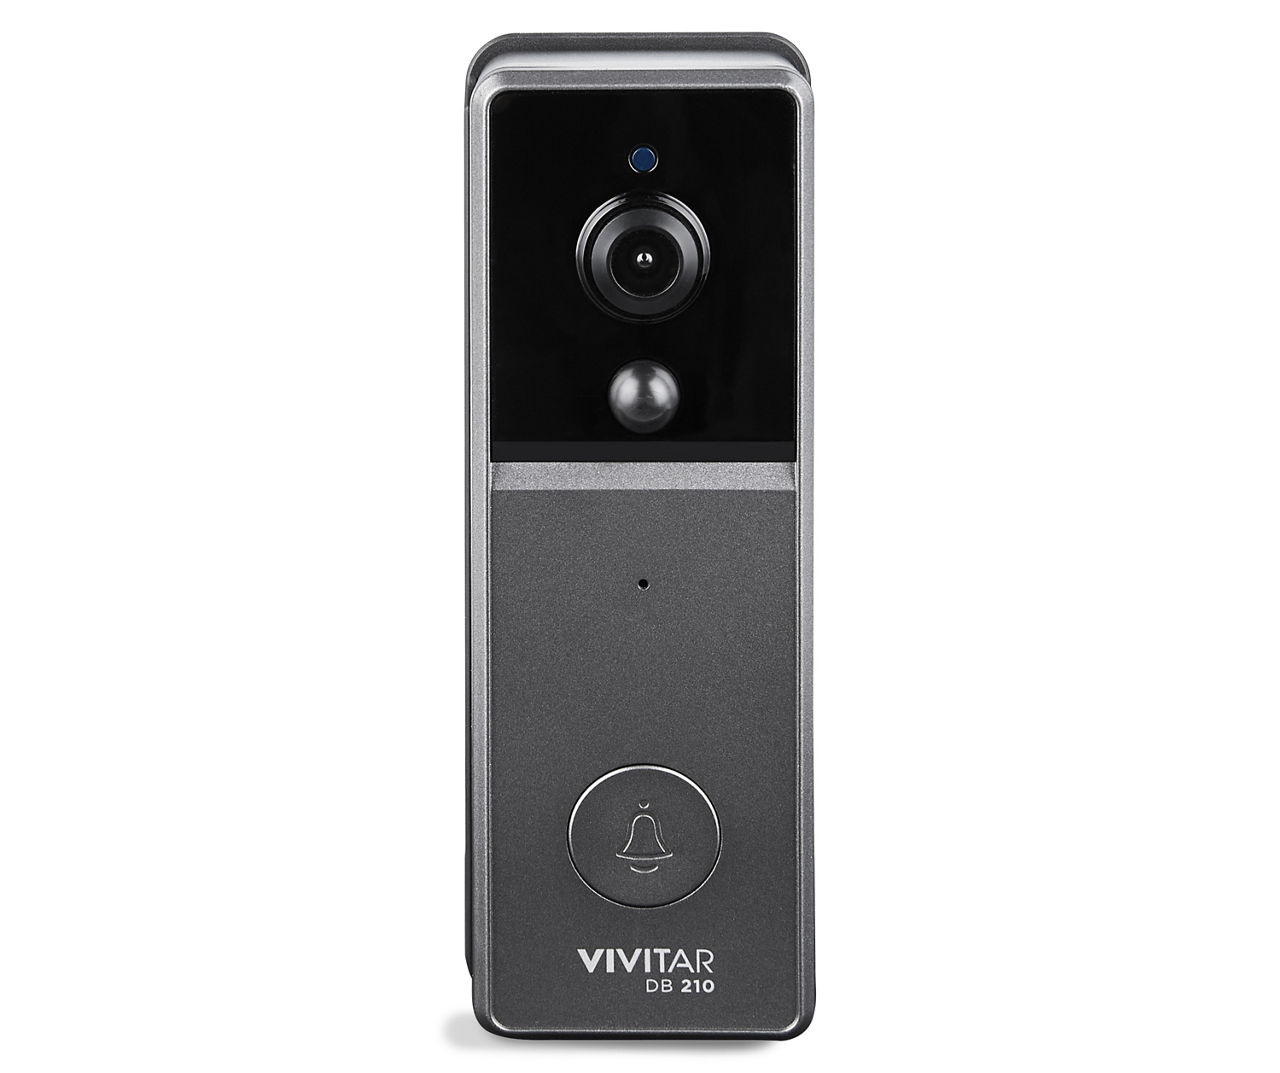 How To Work Vivitar Wireless Video Doorbell